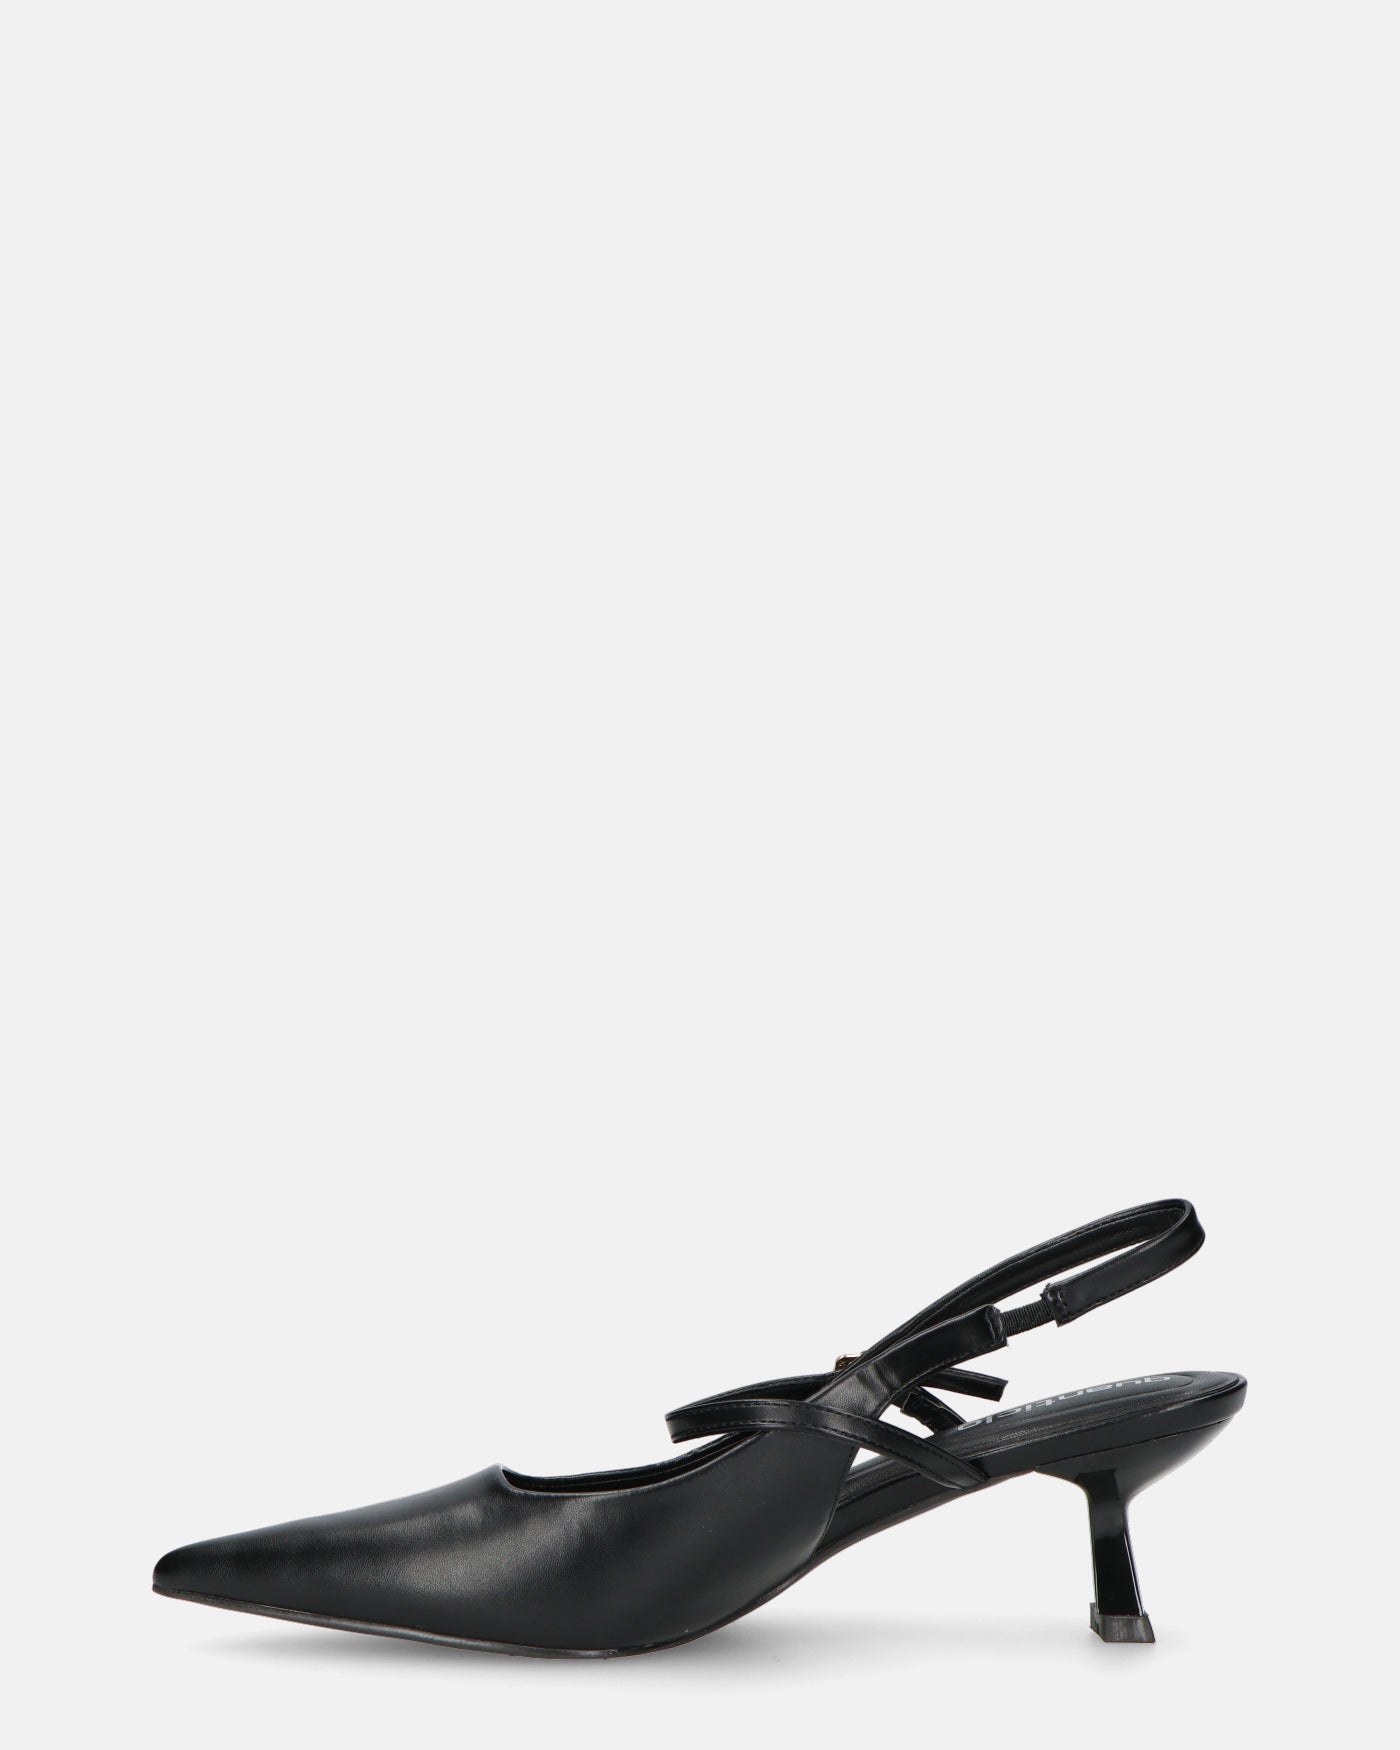 OLHA - decolette in ecopelle nera con tacco basso e cinturino